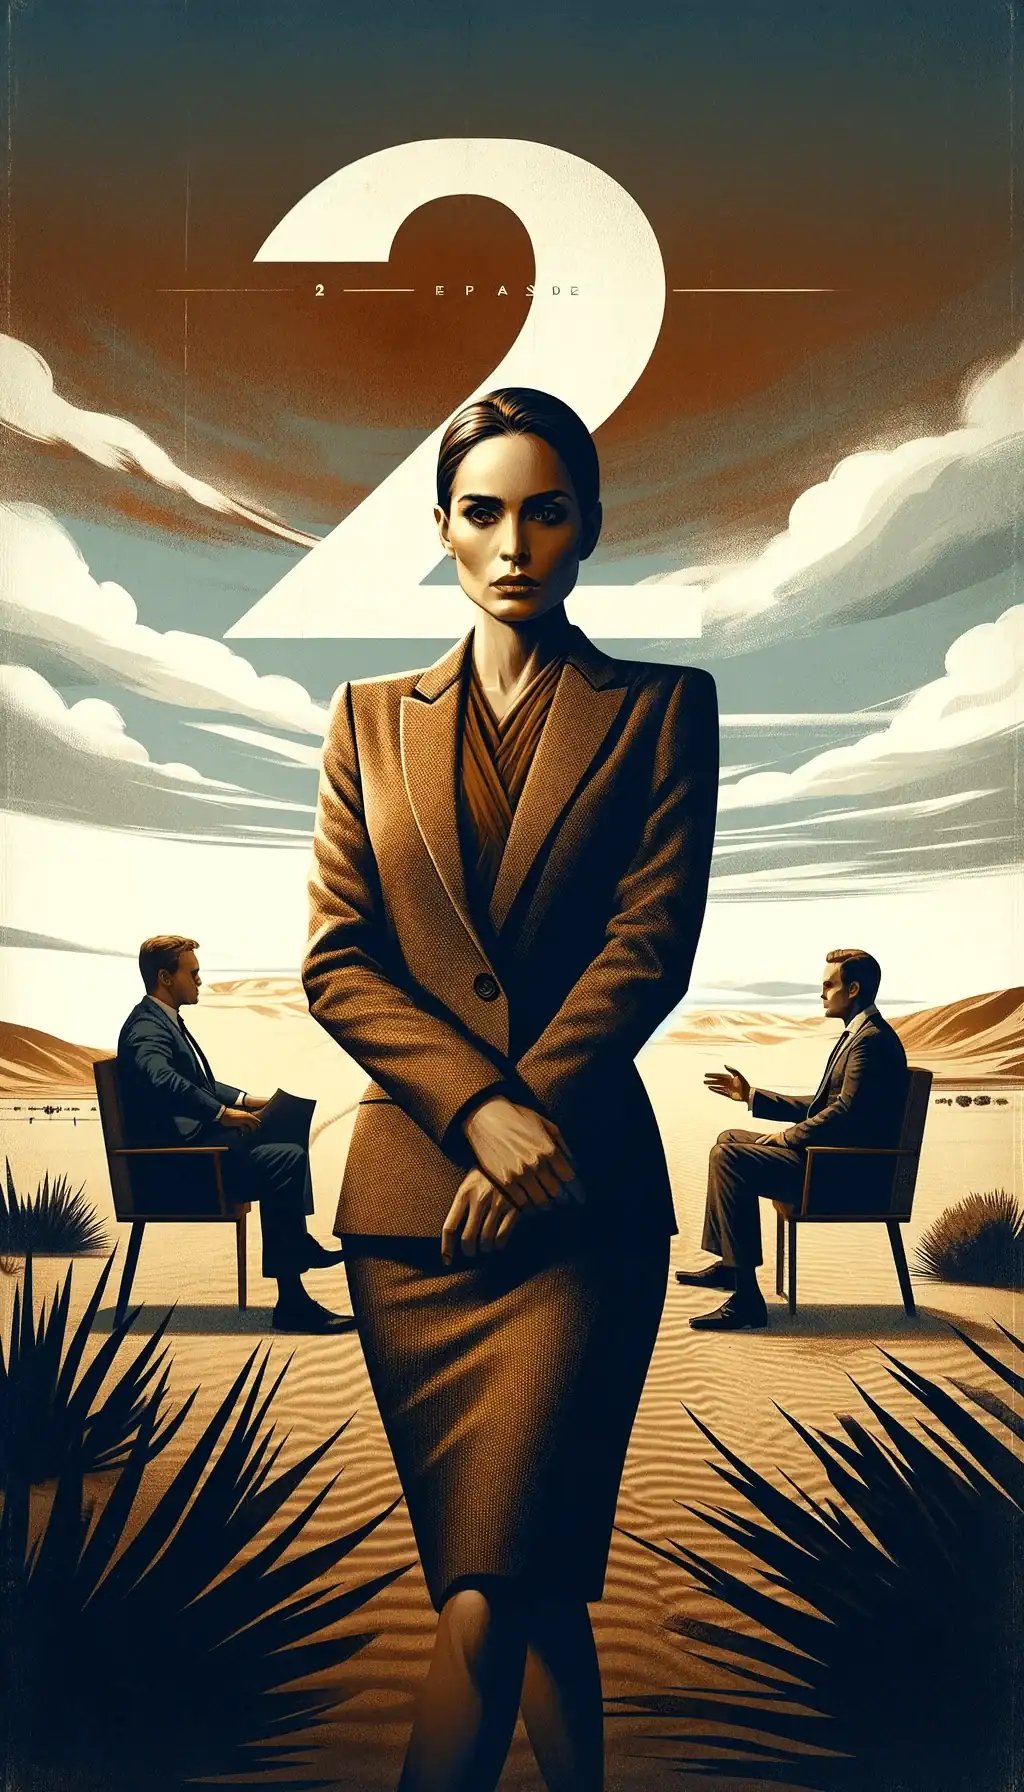 Второй эпизод первого сезона сериала с центральной фигурой девушки Ким в костюме, пустыня и двое мужчин, цифра два